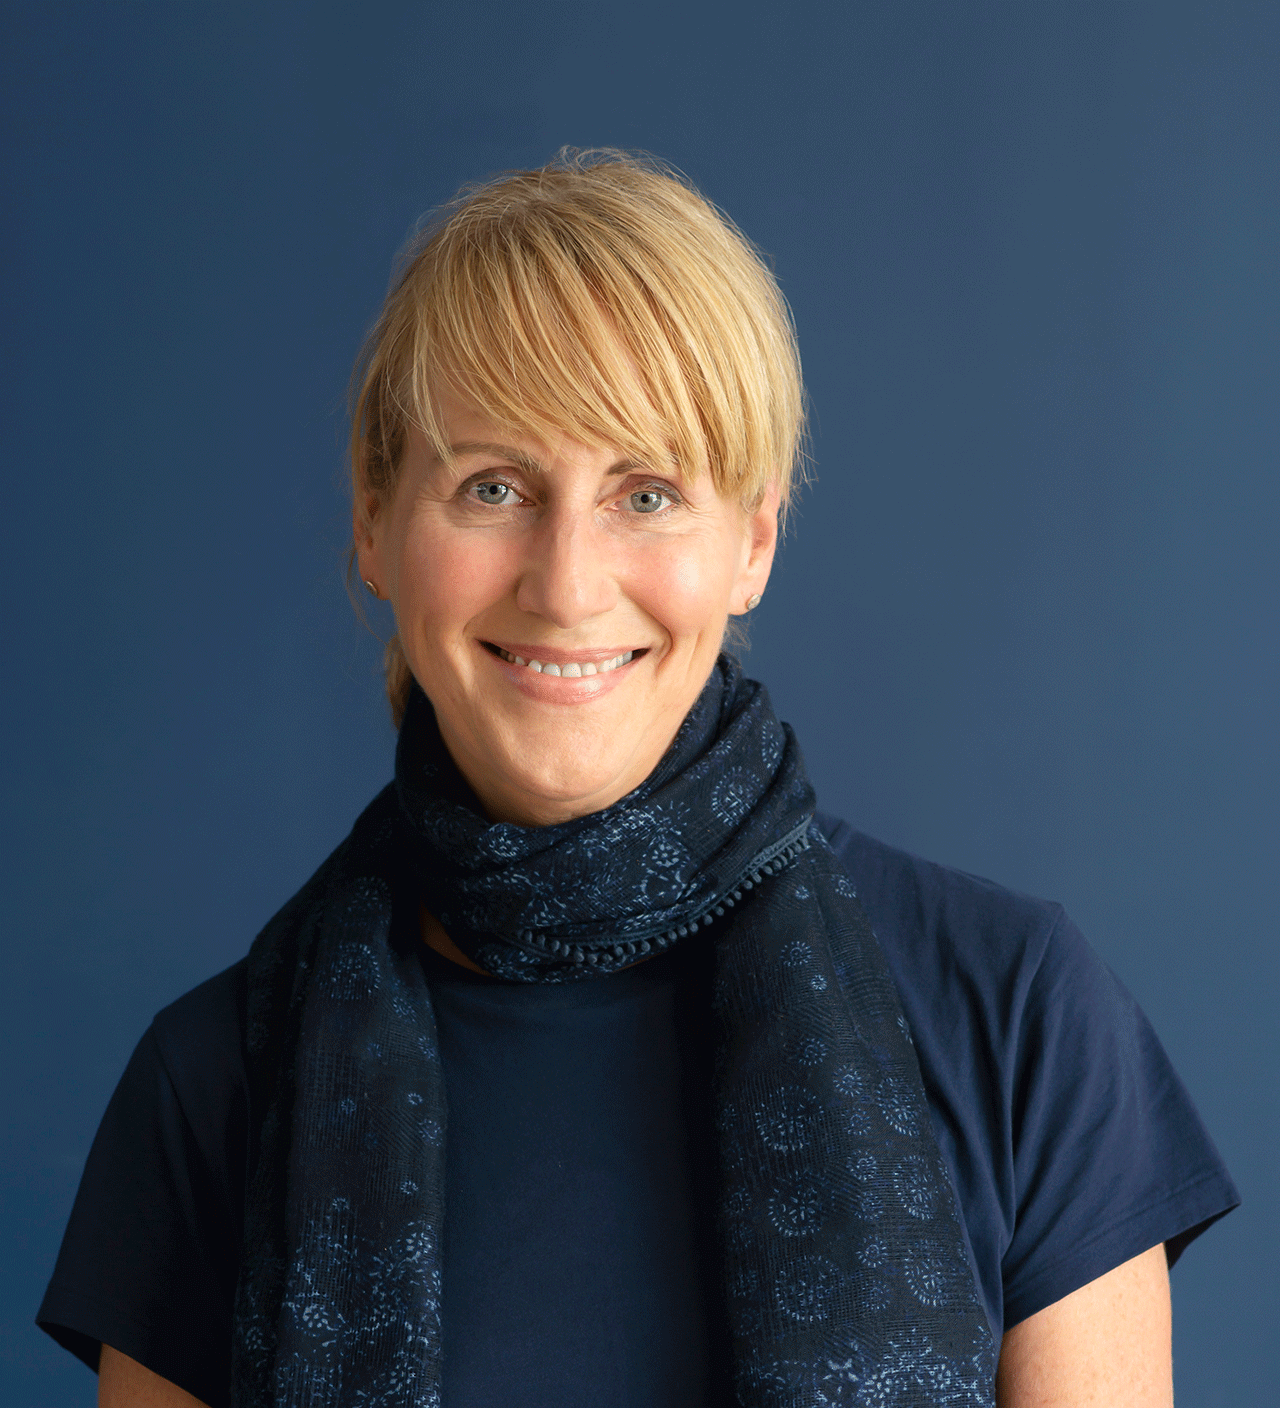 Eine lächelnde blonde Frau trägt einen blauen Schal.